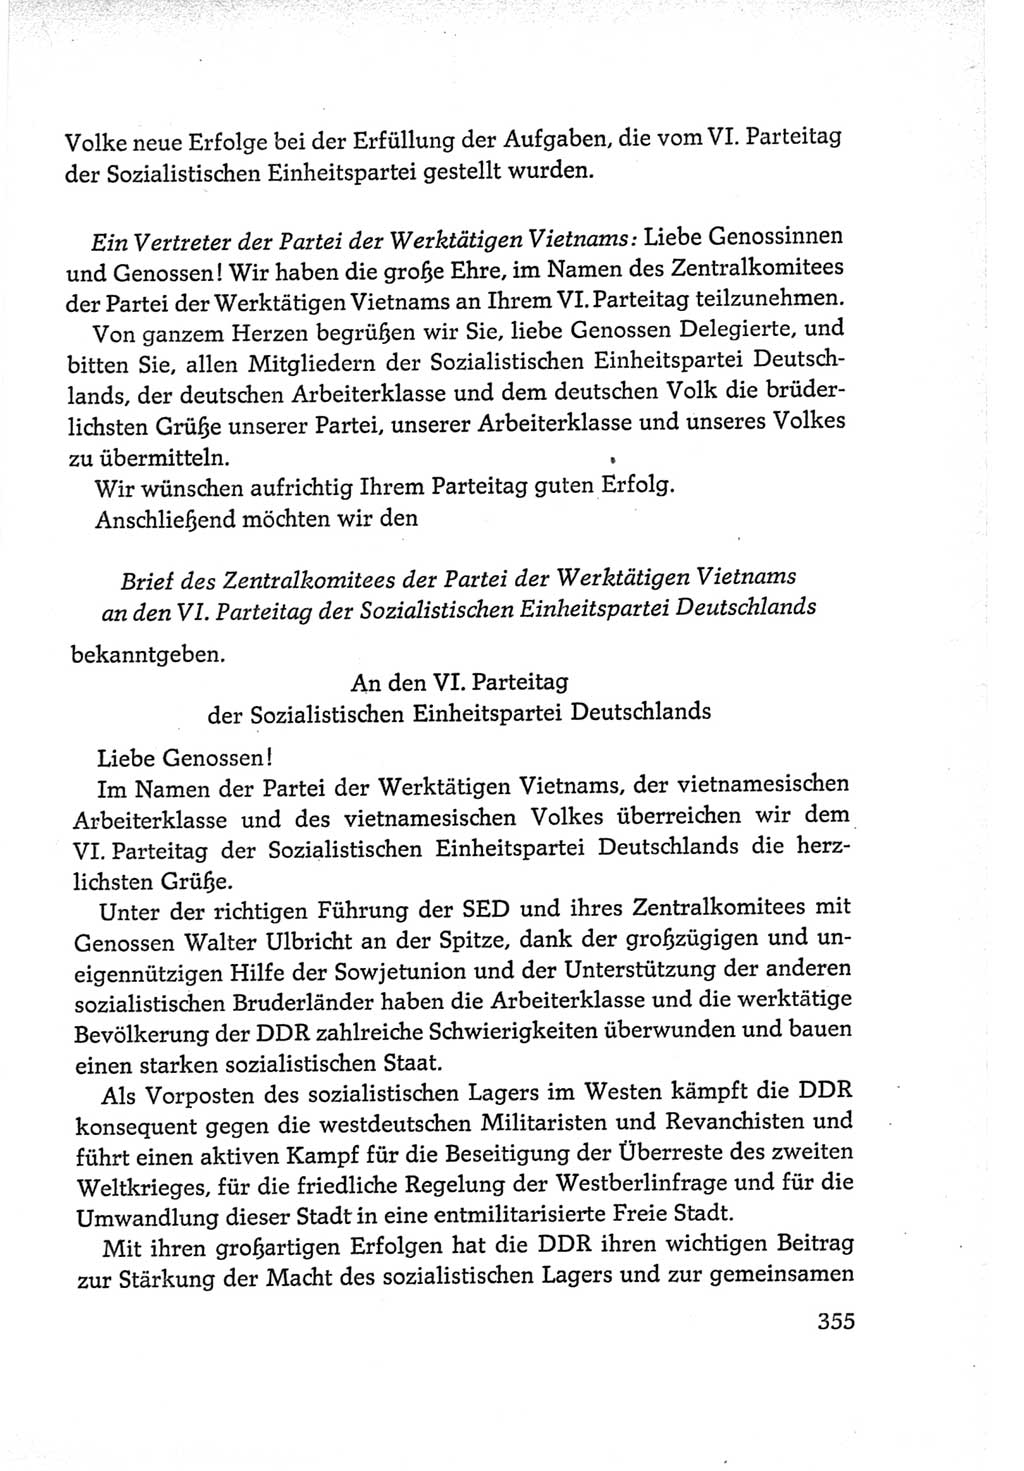 Protokoll der Verhandlungen des Ⅵ. Parteitages der Sozialistischen Einheitspartei Deutschlands (SED) [Deutsche Demokratische Republik (DDR)] 1963, Band Ⅱ, Seite 355 (Prot. Verh. Ⅵ. PT SED DDR 1963, Bd. Ⅱ, S. 355)